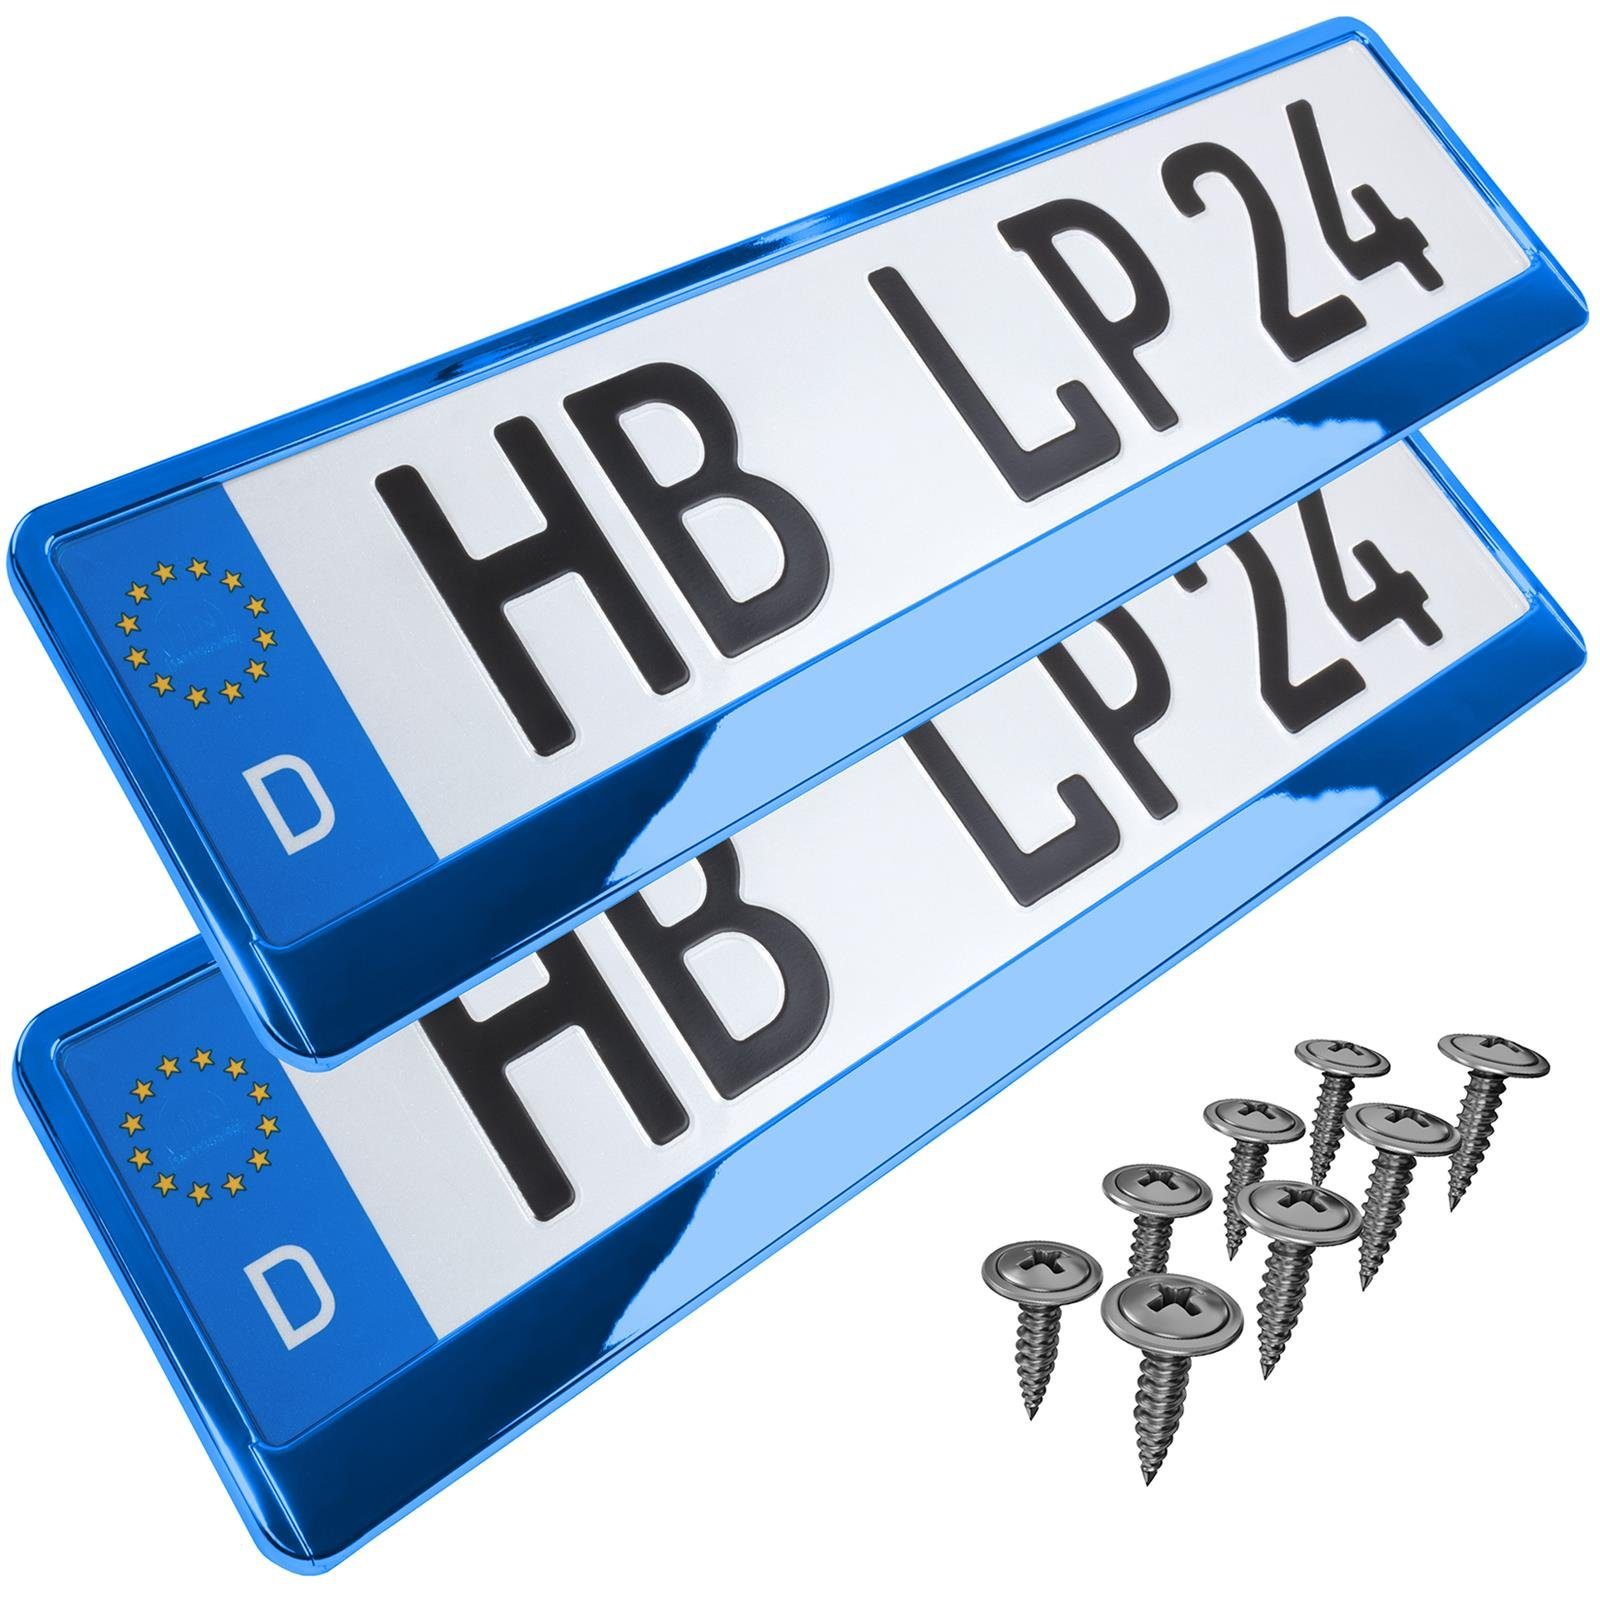 L & P Car Design Kennzeichenhalter für Auto in Blau-Chrom Kennzeichenhalterung, (2 Stück)